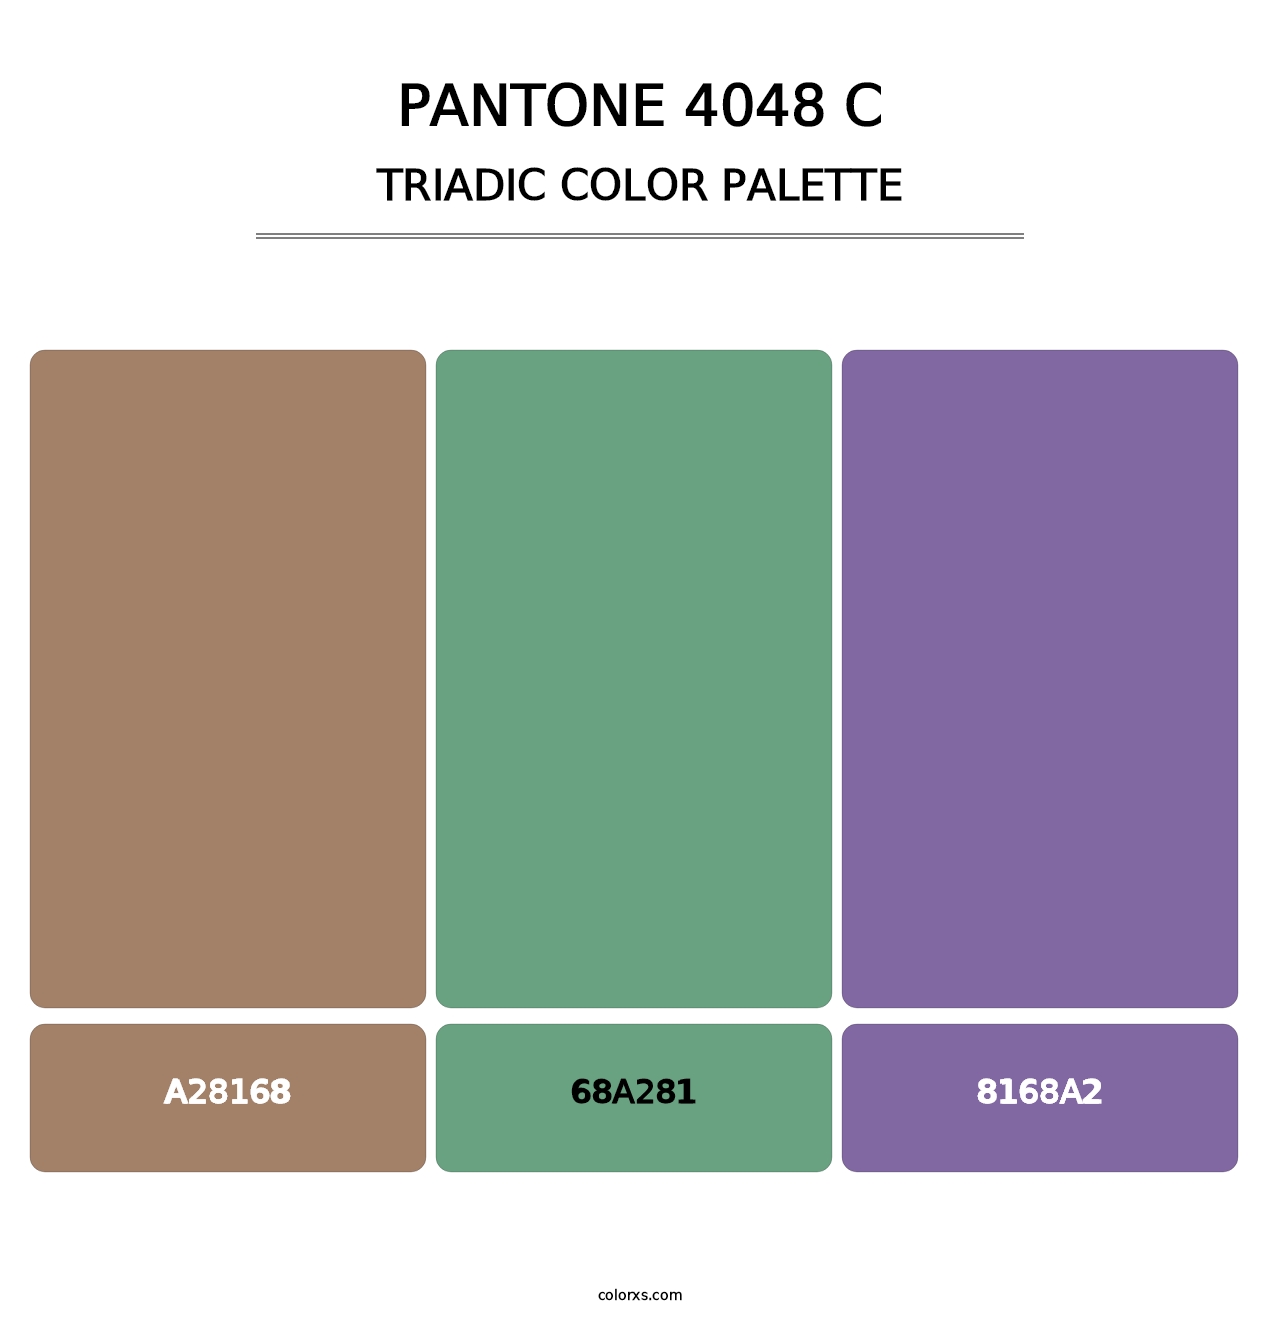 PANTONE 4048 C - Triadic Color Palette